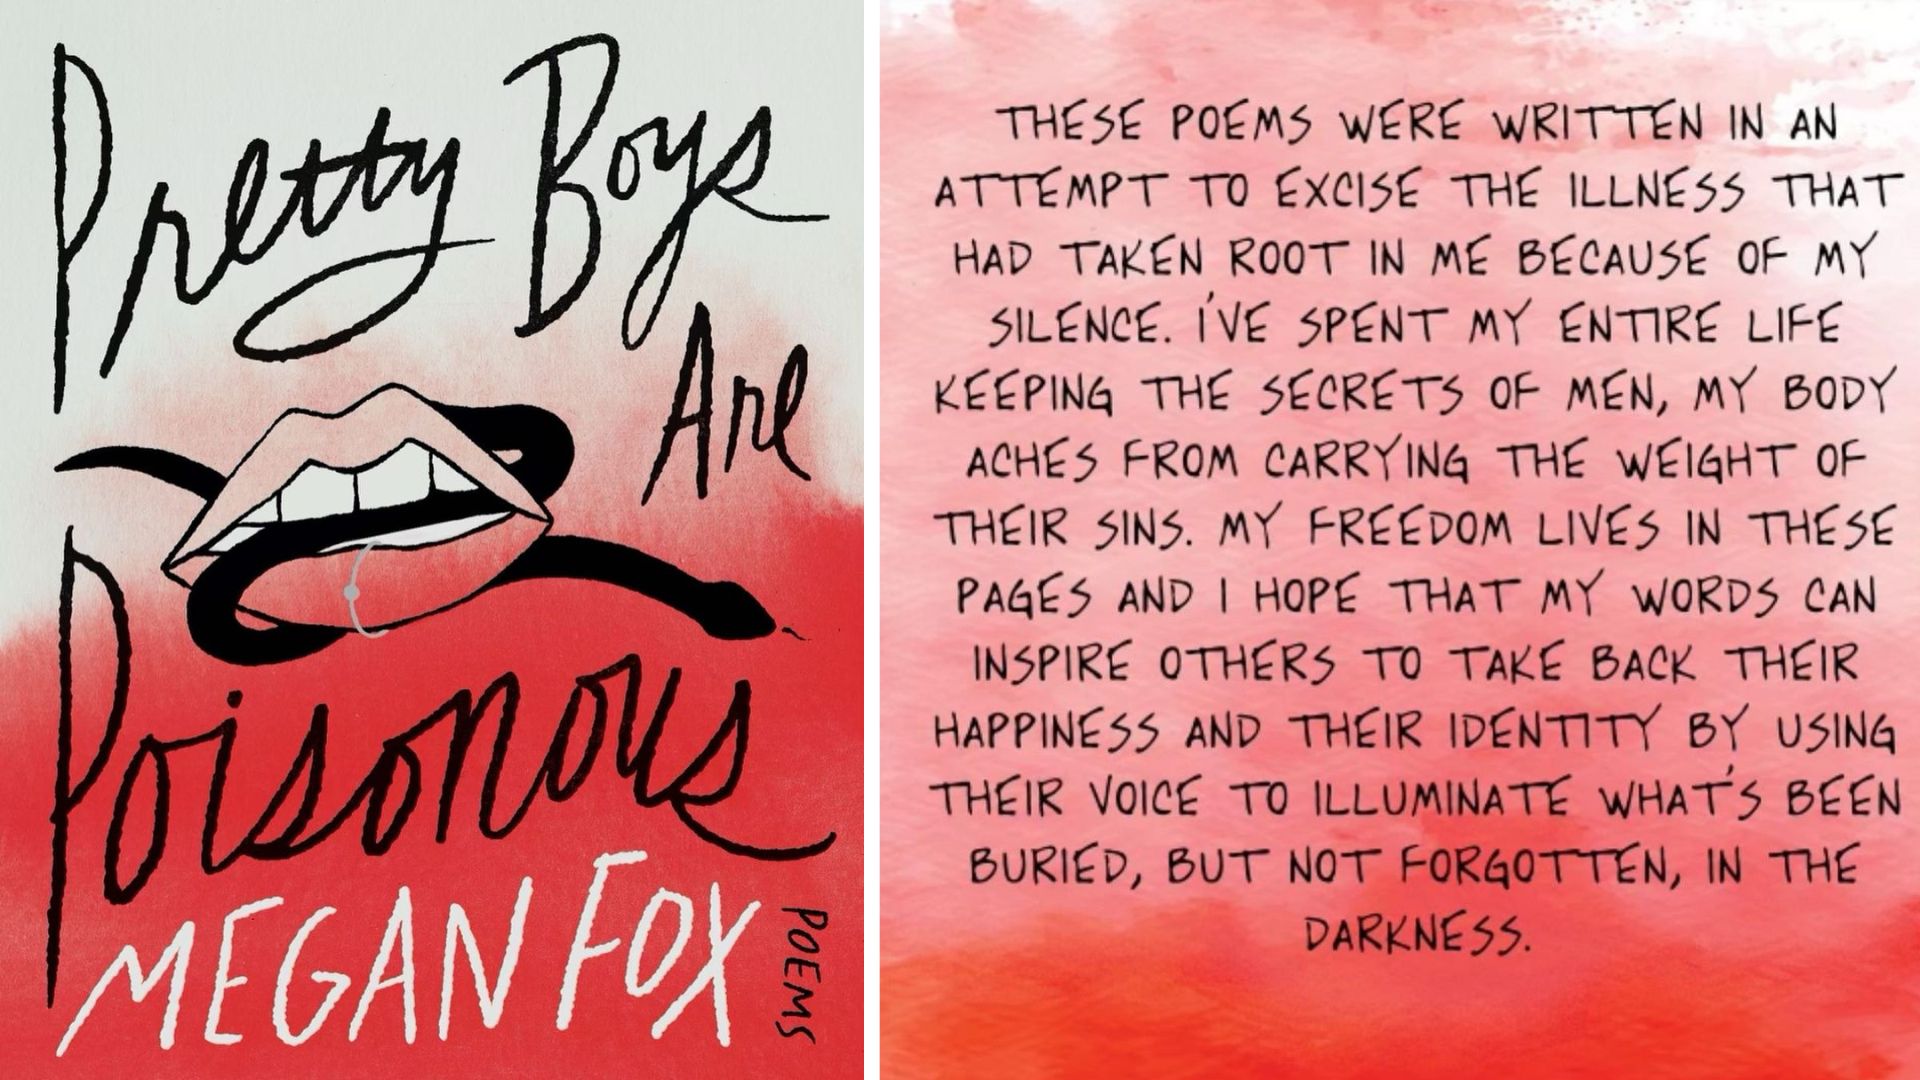 Megan Fox sort son premier recueil de poésie, et ça s’annonce bien misandre